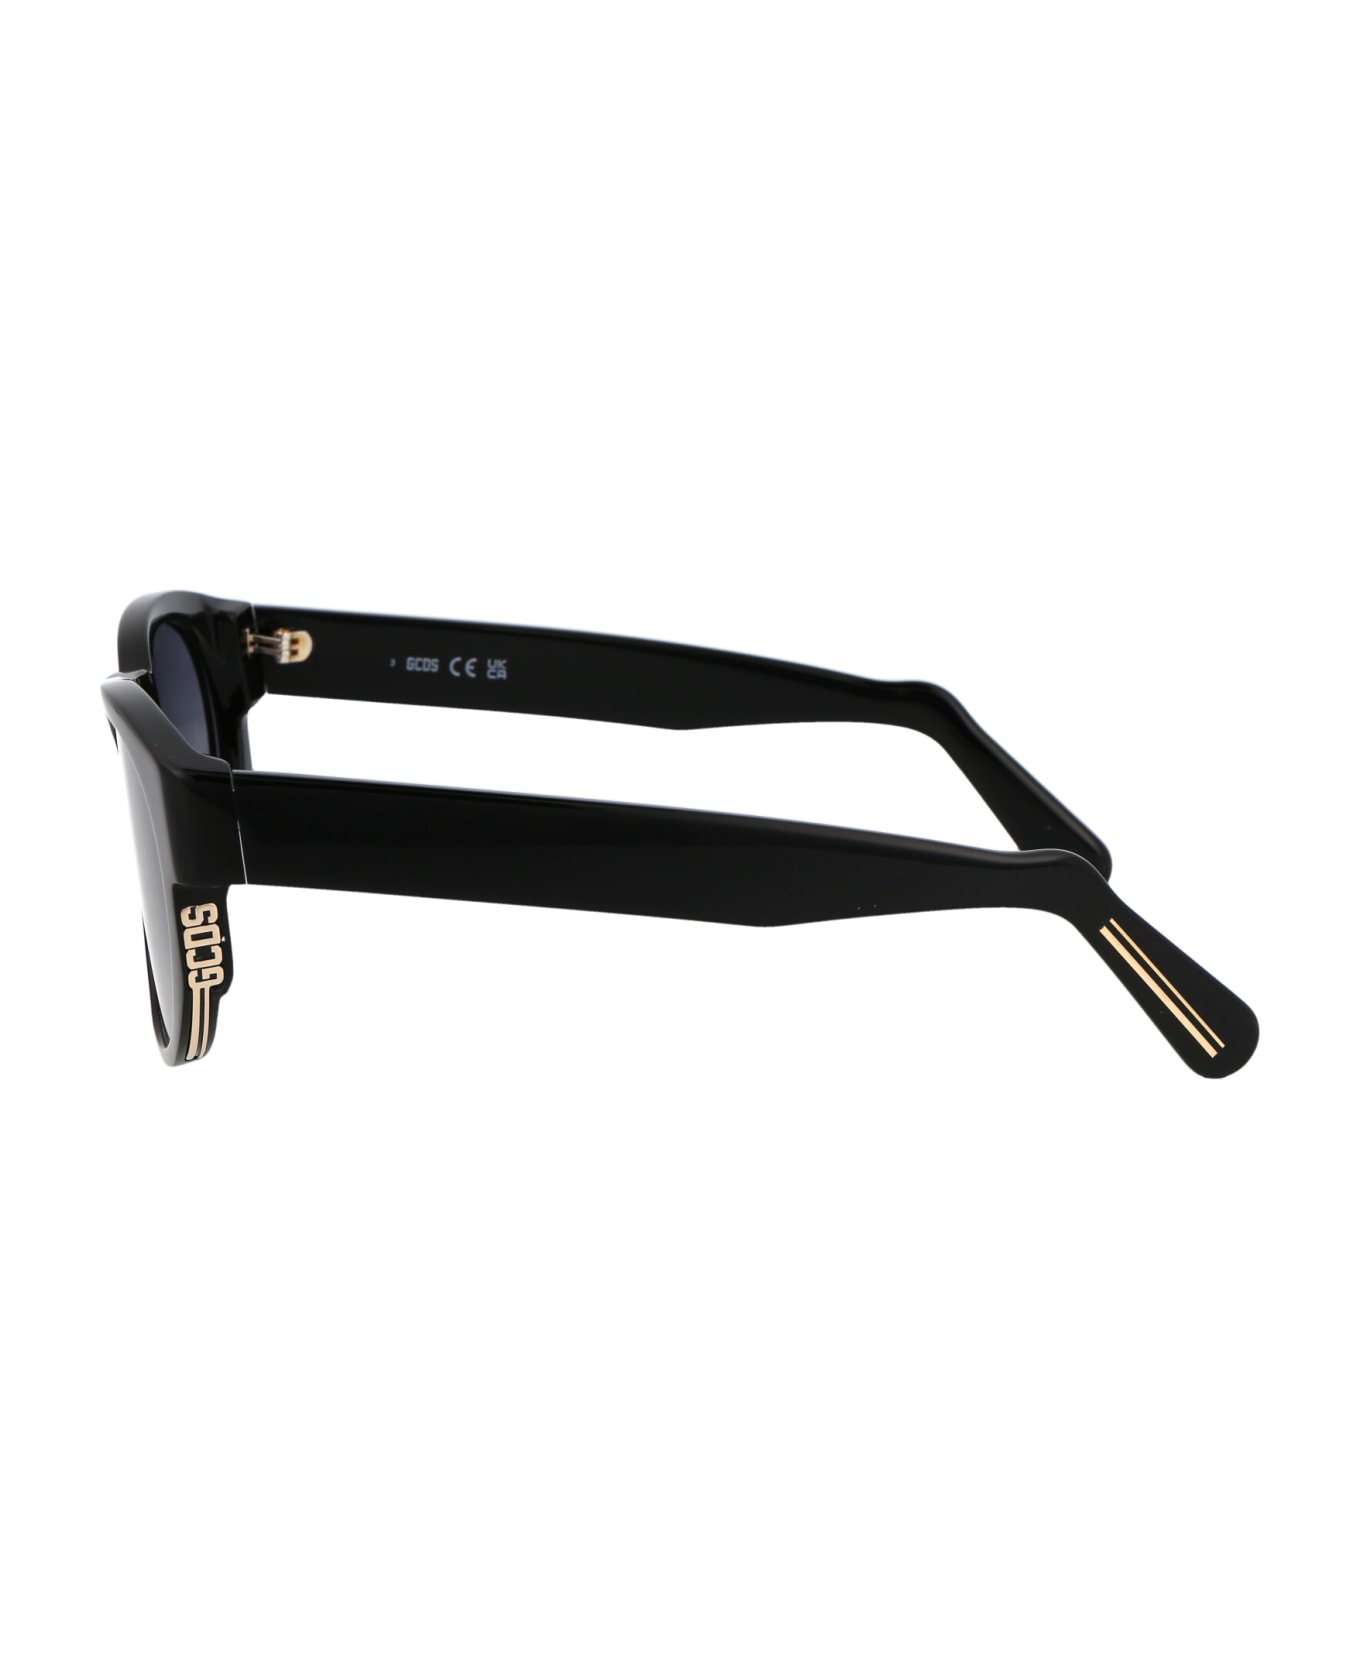 GCDS Gd0011 Sunglasses - 01B Nero Lucido/Fumo Grad